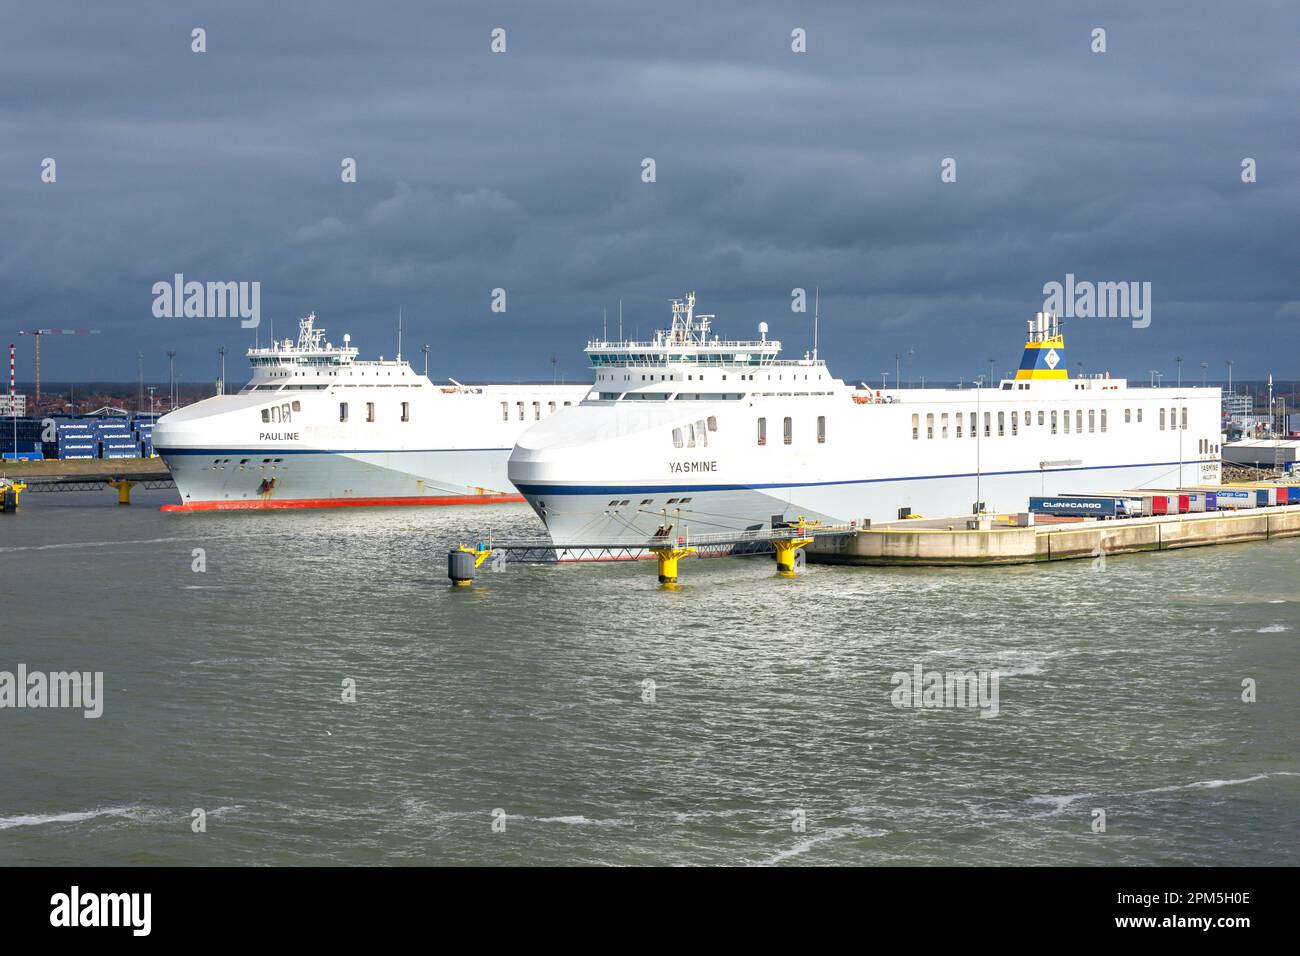 Navi da carico Yasmine e Pauline Ro-Ro nel porto di Zeebrugge, Bruges (Brugge), provincia delle Fiandre Occidentali, Regno del Belgio. Foto Stock